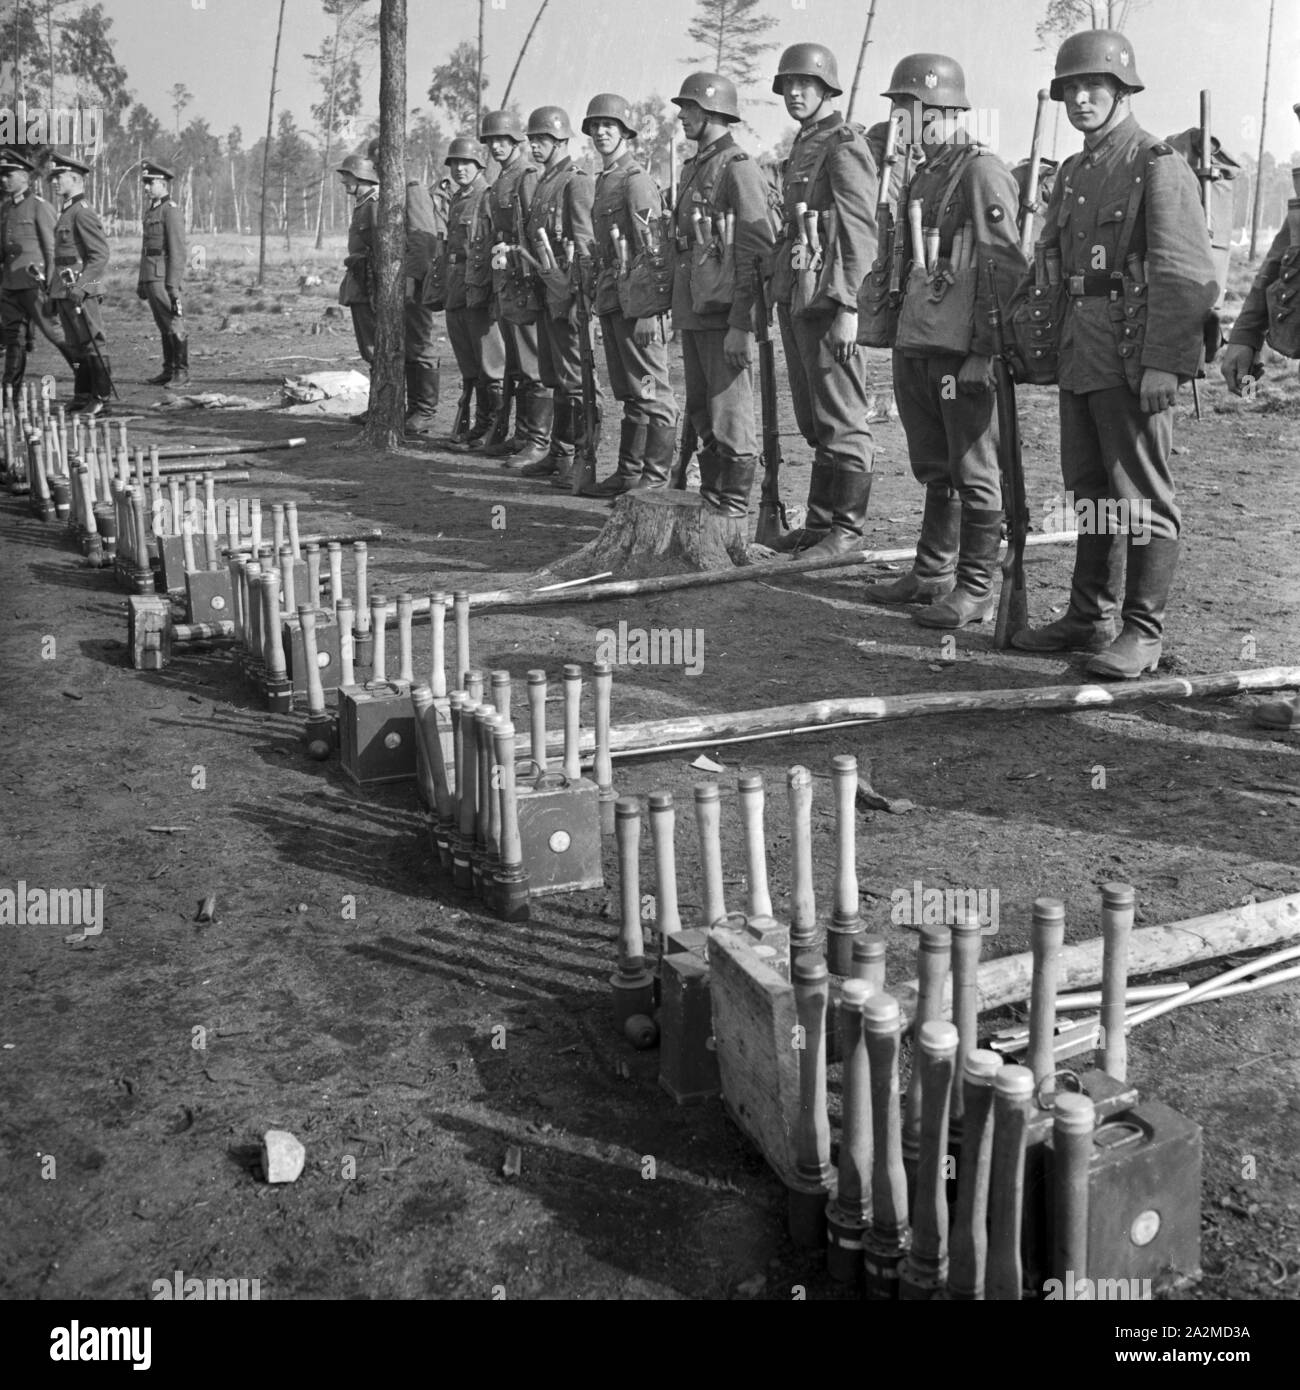 Original- Bildunterschrift: Piionier Stoßtrupp mit Ausrüstung, Deutschland 1940er Jahre. Engineering soldier group with equipment, Germany 1940s. Stock Photo